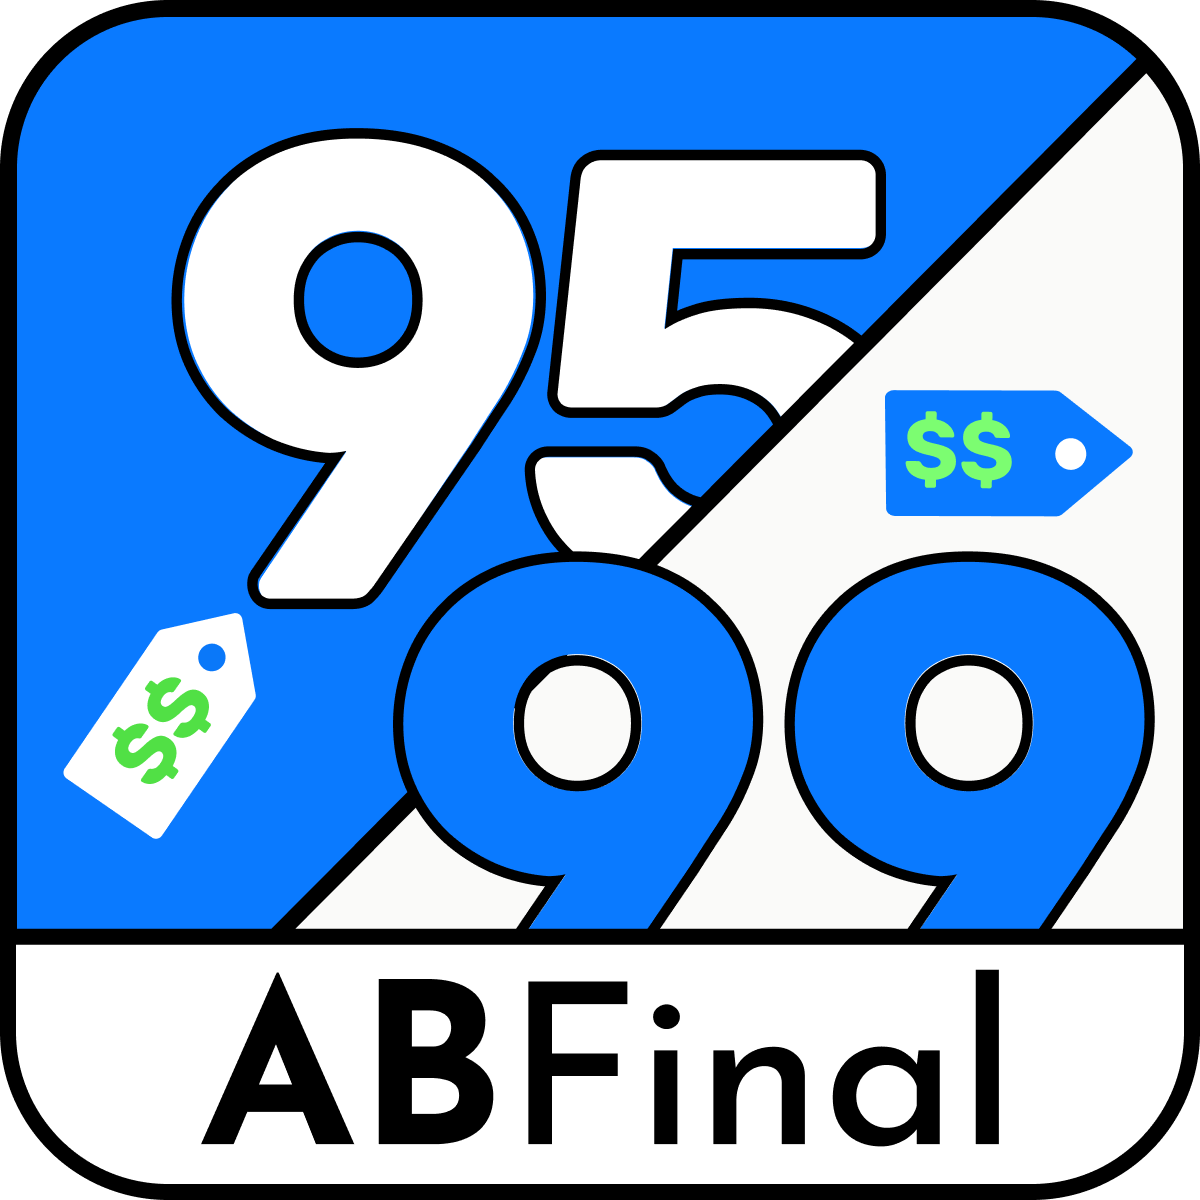 Price AB Testing : A/B Final Shopify App